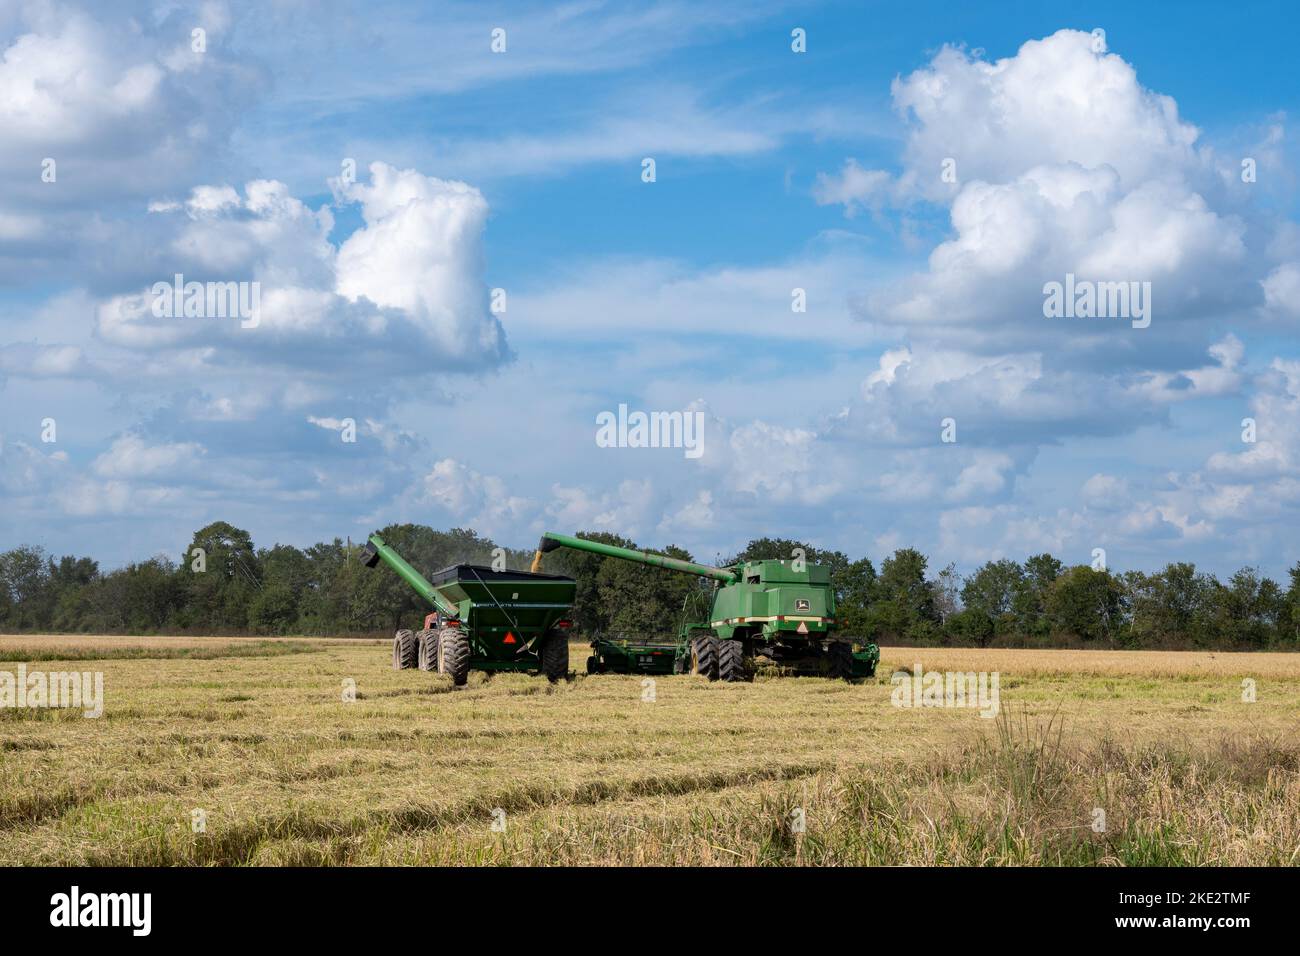 Agriculteur exploitant une moissonneuse-batteuse John Deere pour récolter du riz dans un champ de riz. Katy, Texas, États-Unis. Banque D'Images